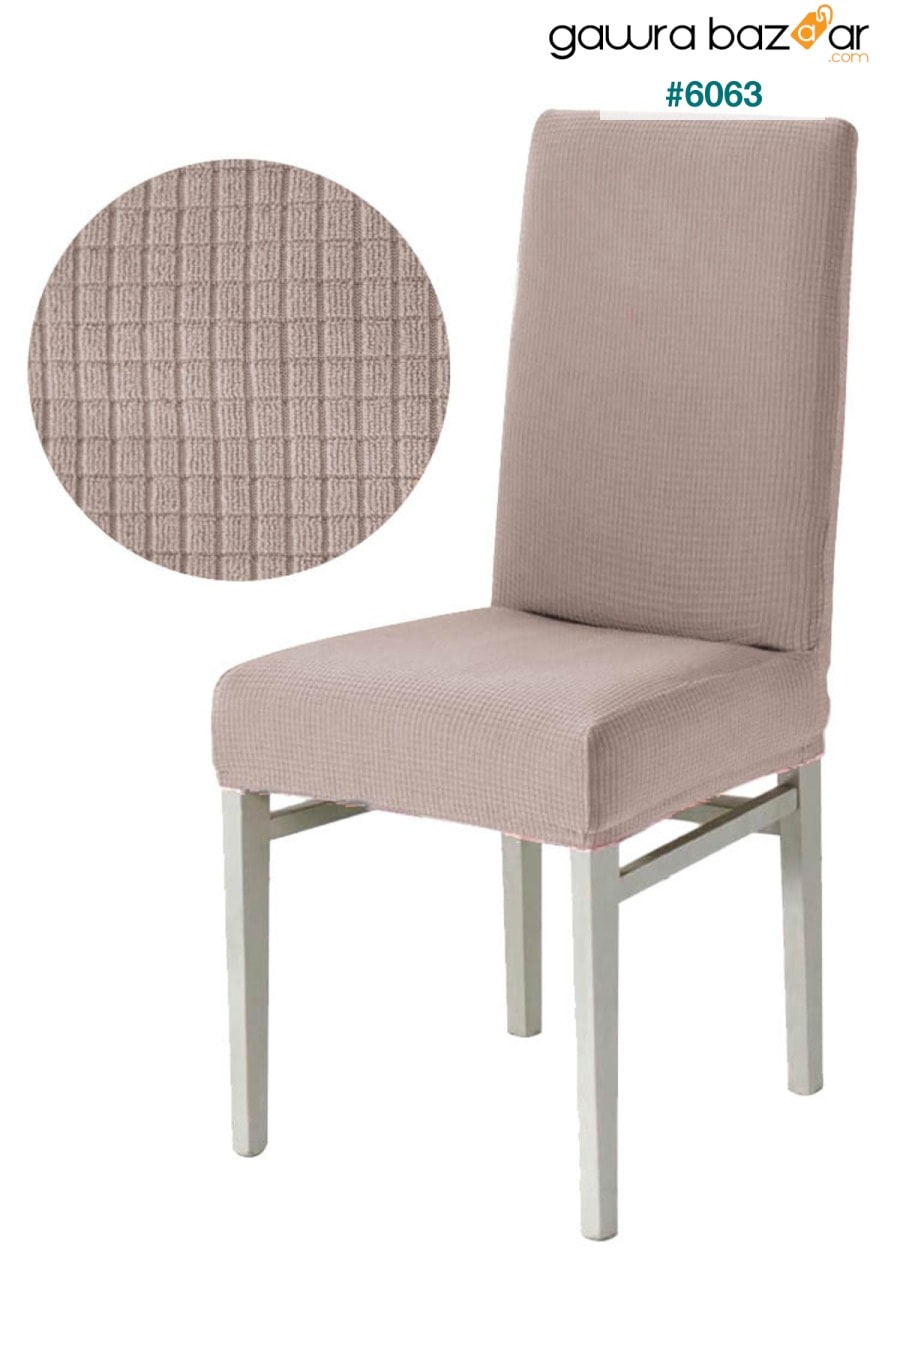 غطاء كرسي قابل للغسل ليكرا مرن غطاء كرسي مطاطي F faiend 0